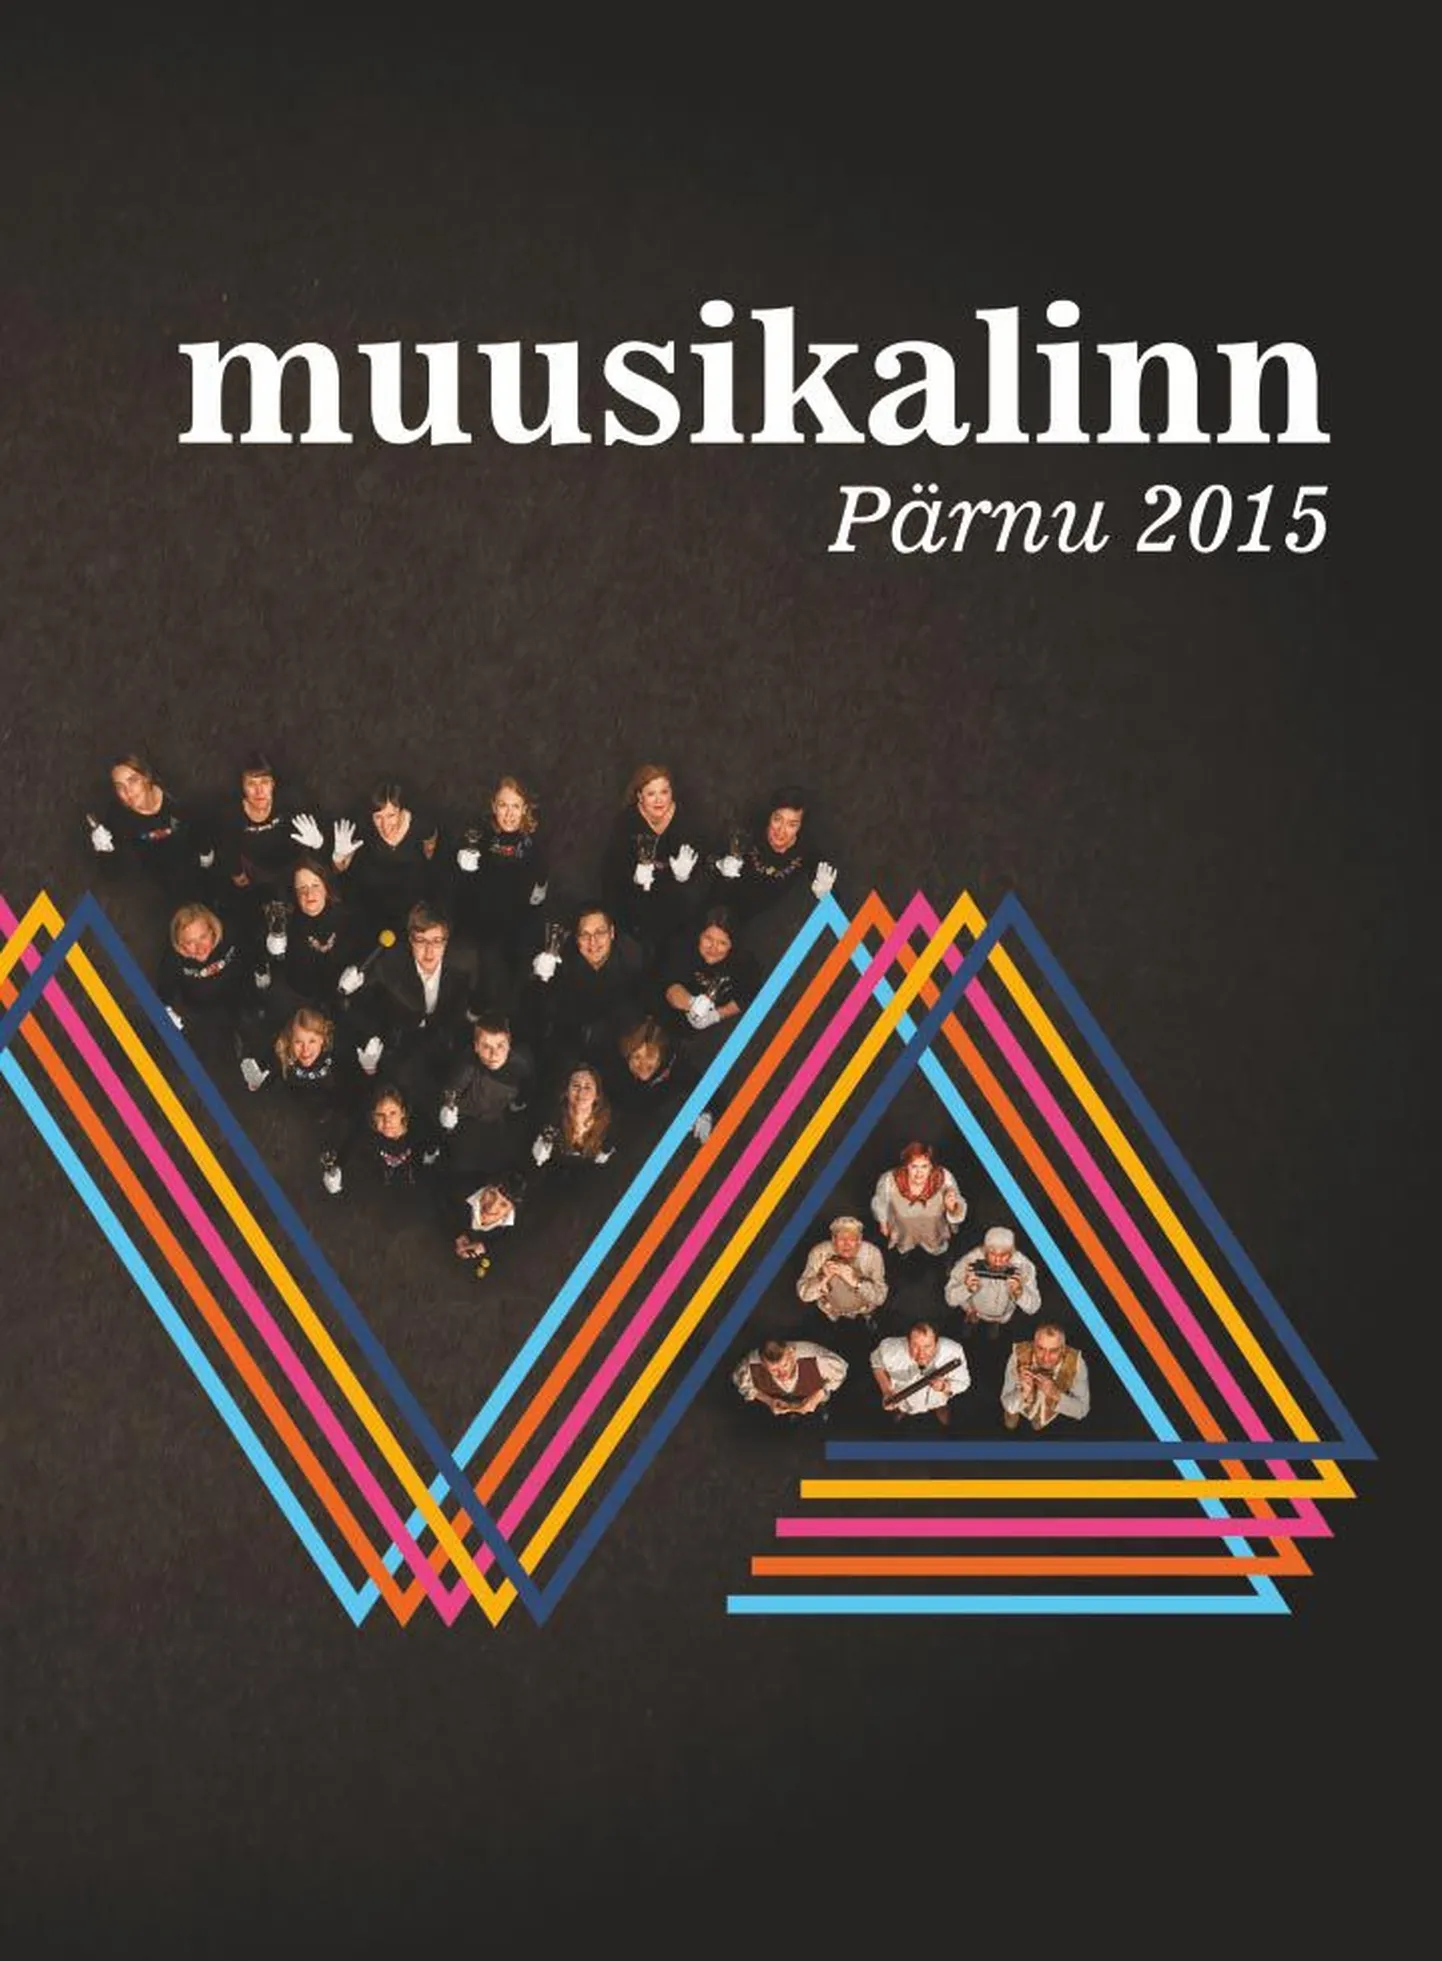 Trükise „Muusikalinn Pärnu 2015“ esikaas.